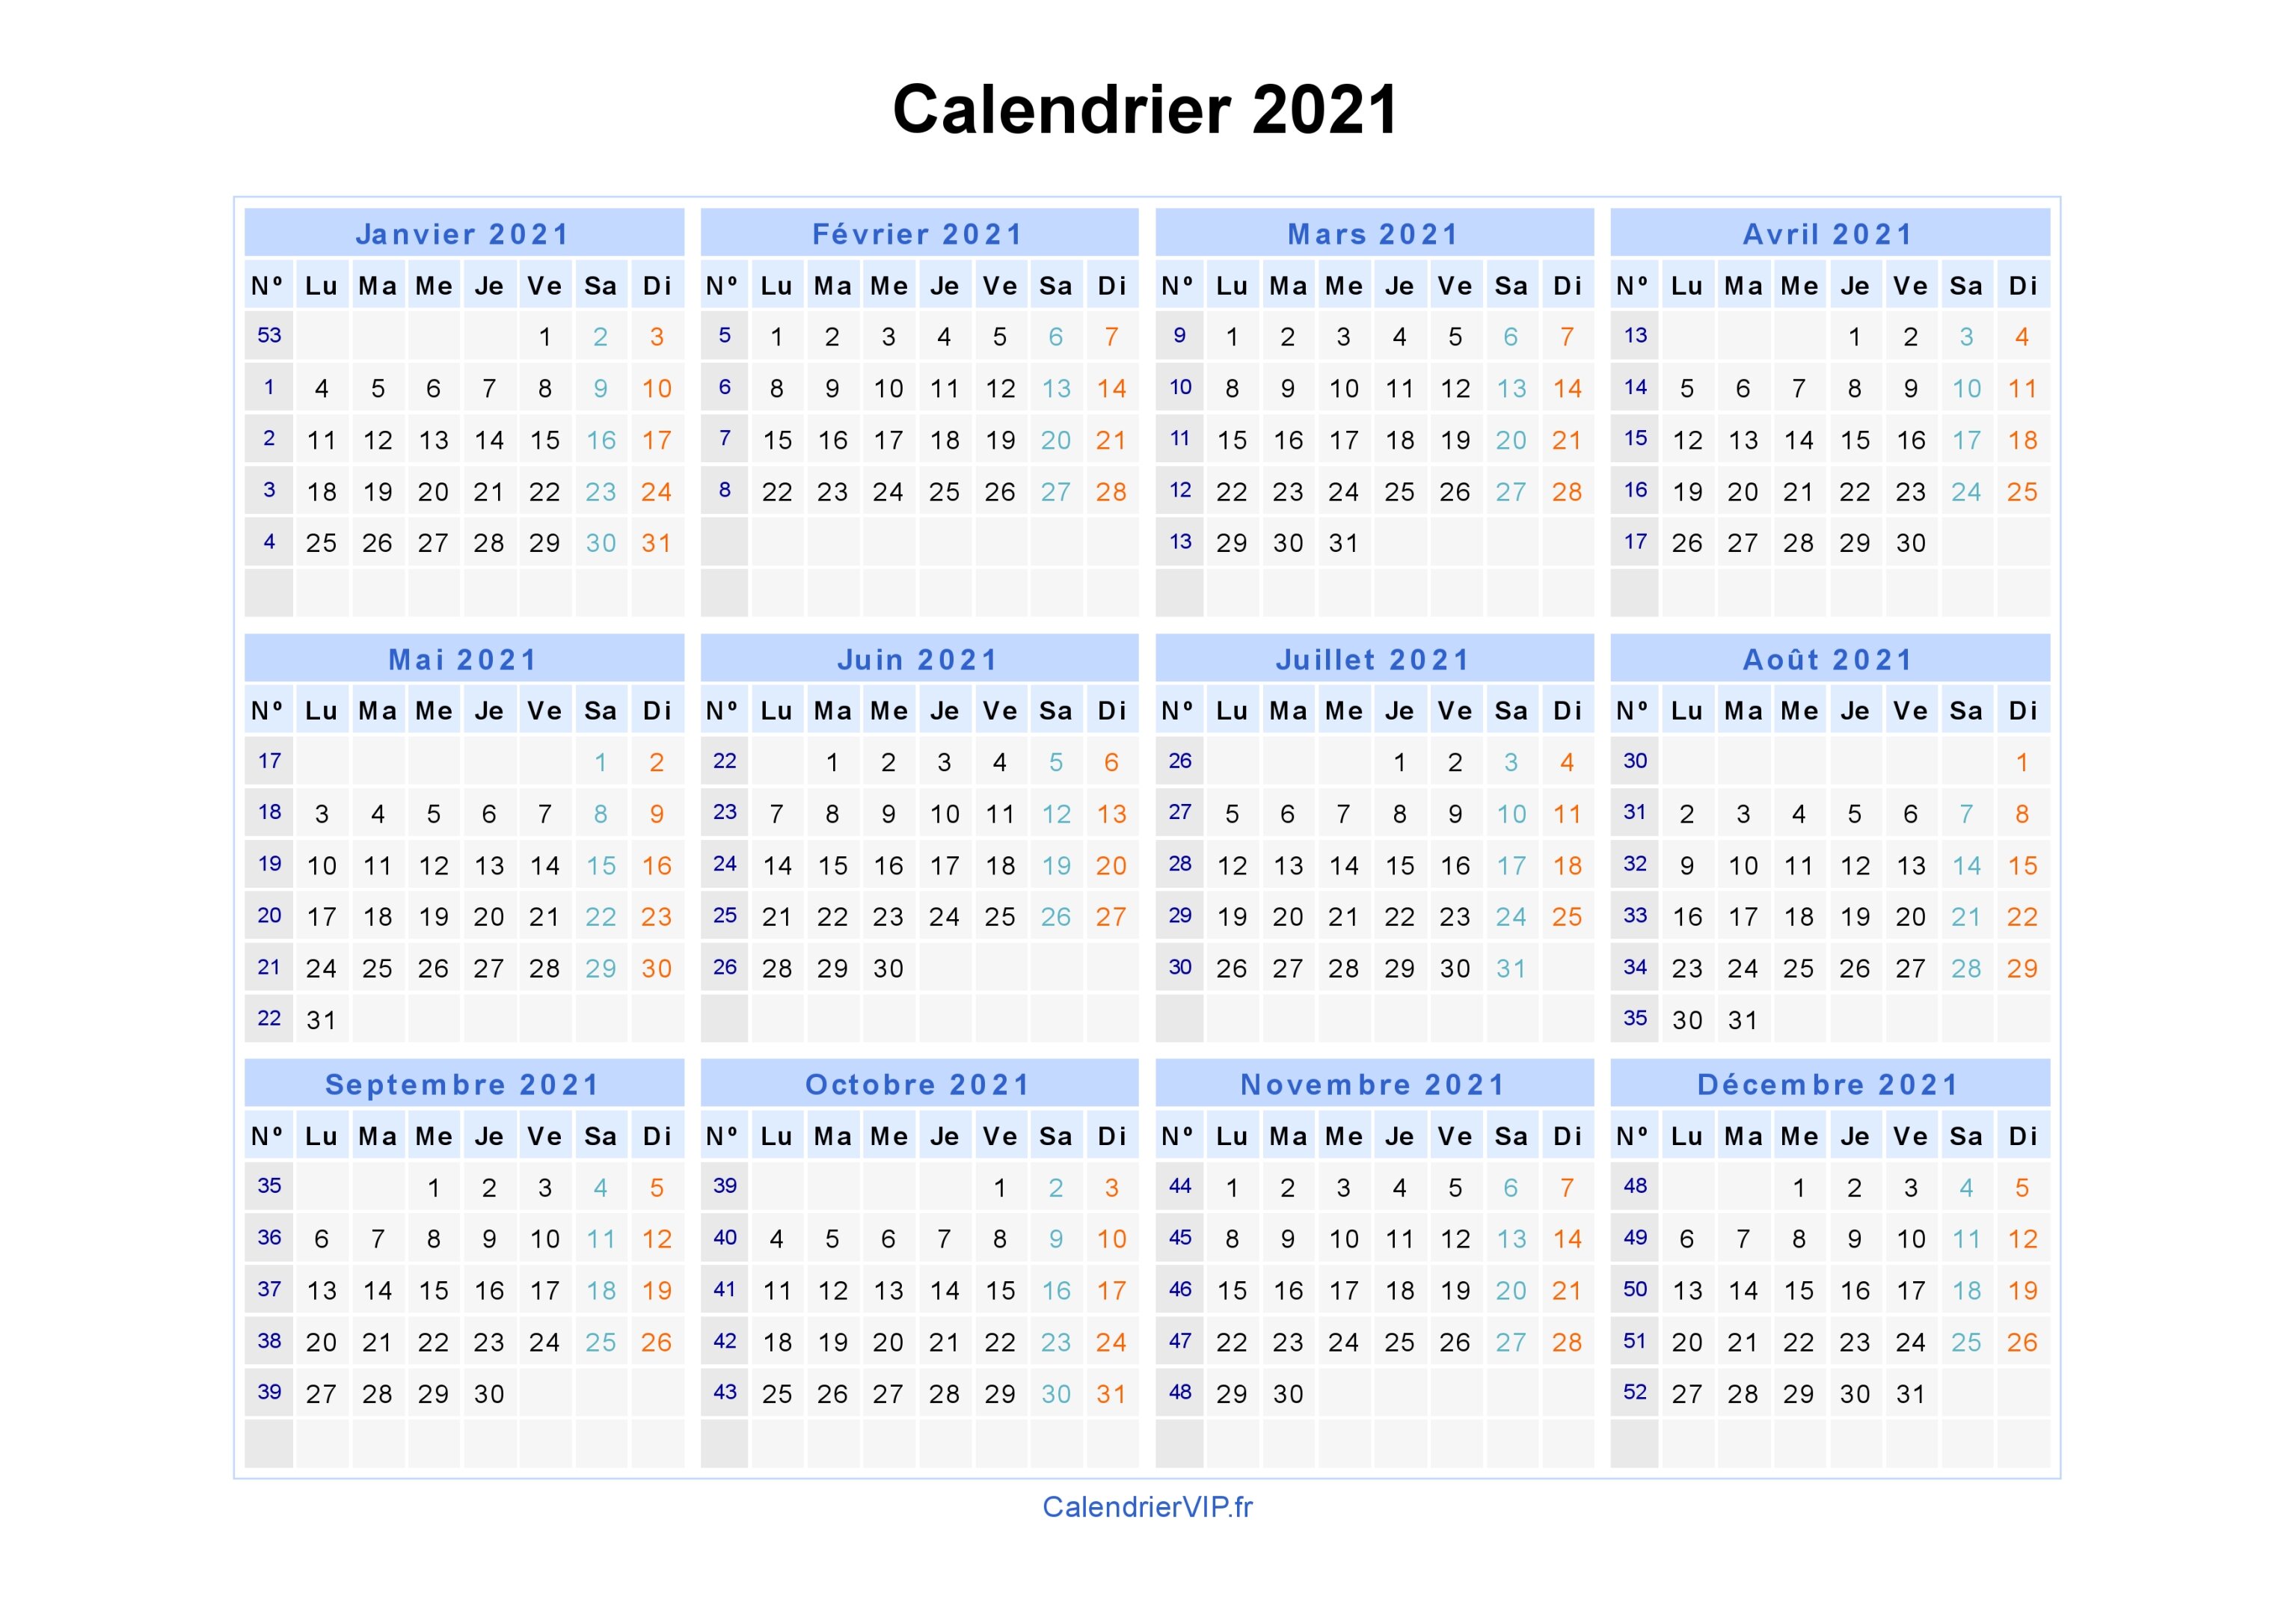 Calendrier 2021 Telecharger Calendrier 2021 à imprimer gratuit en PDF et Excel